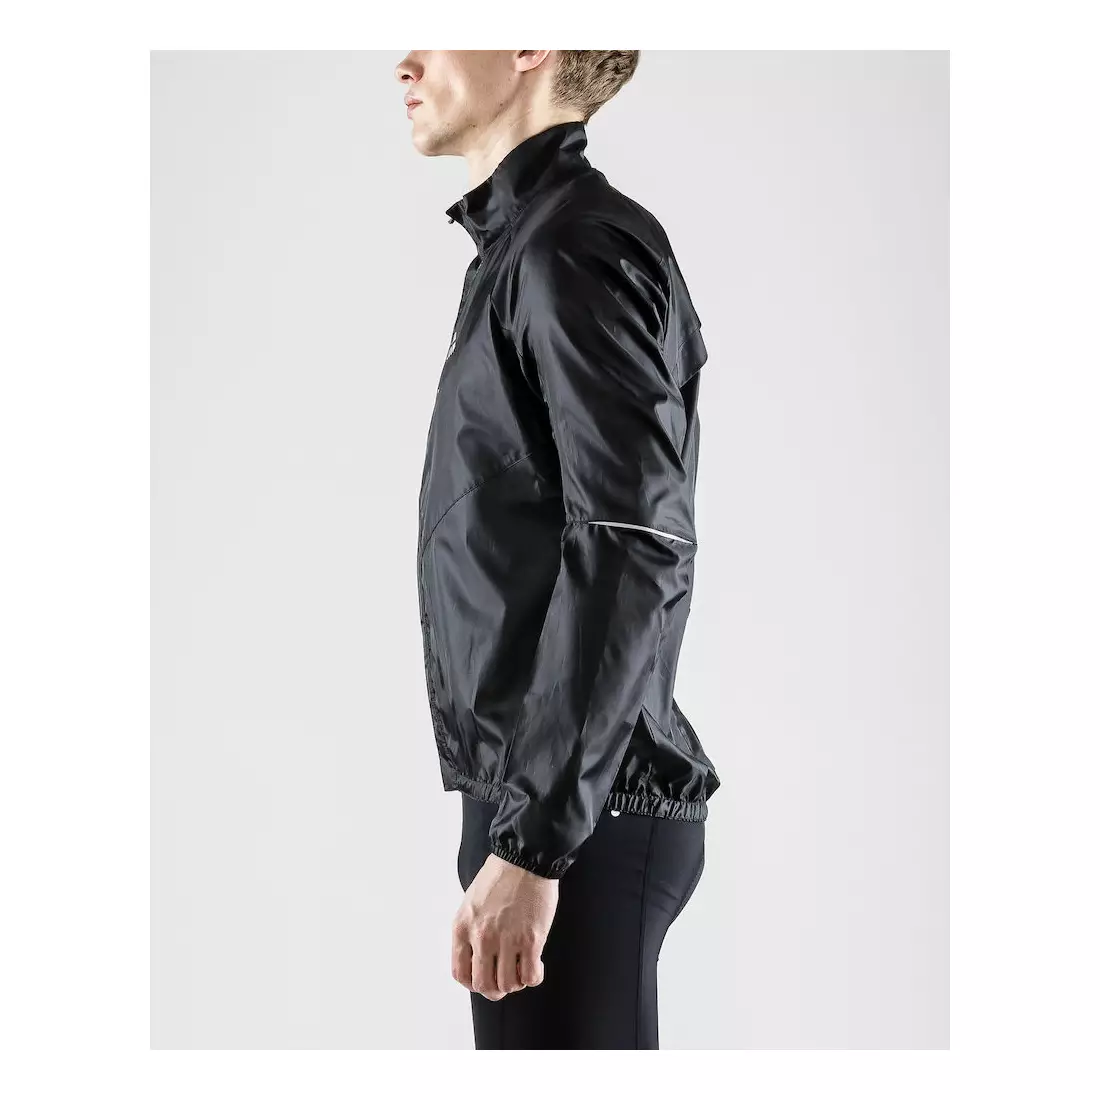 CRAFT Mist Wind JKT men's cycling jacket, windbreaker 1906093-999000, black